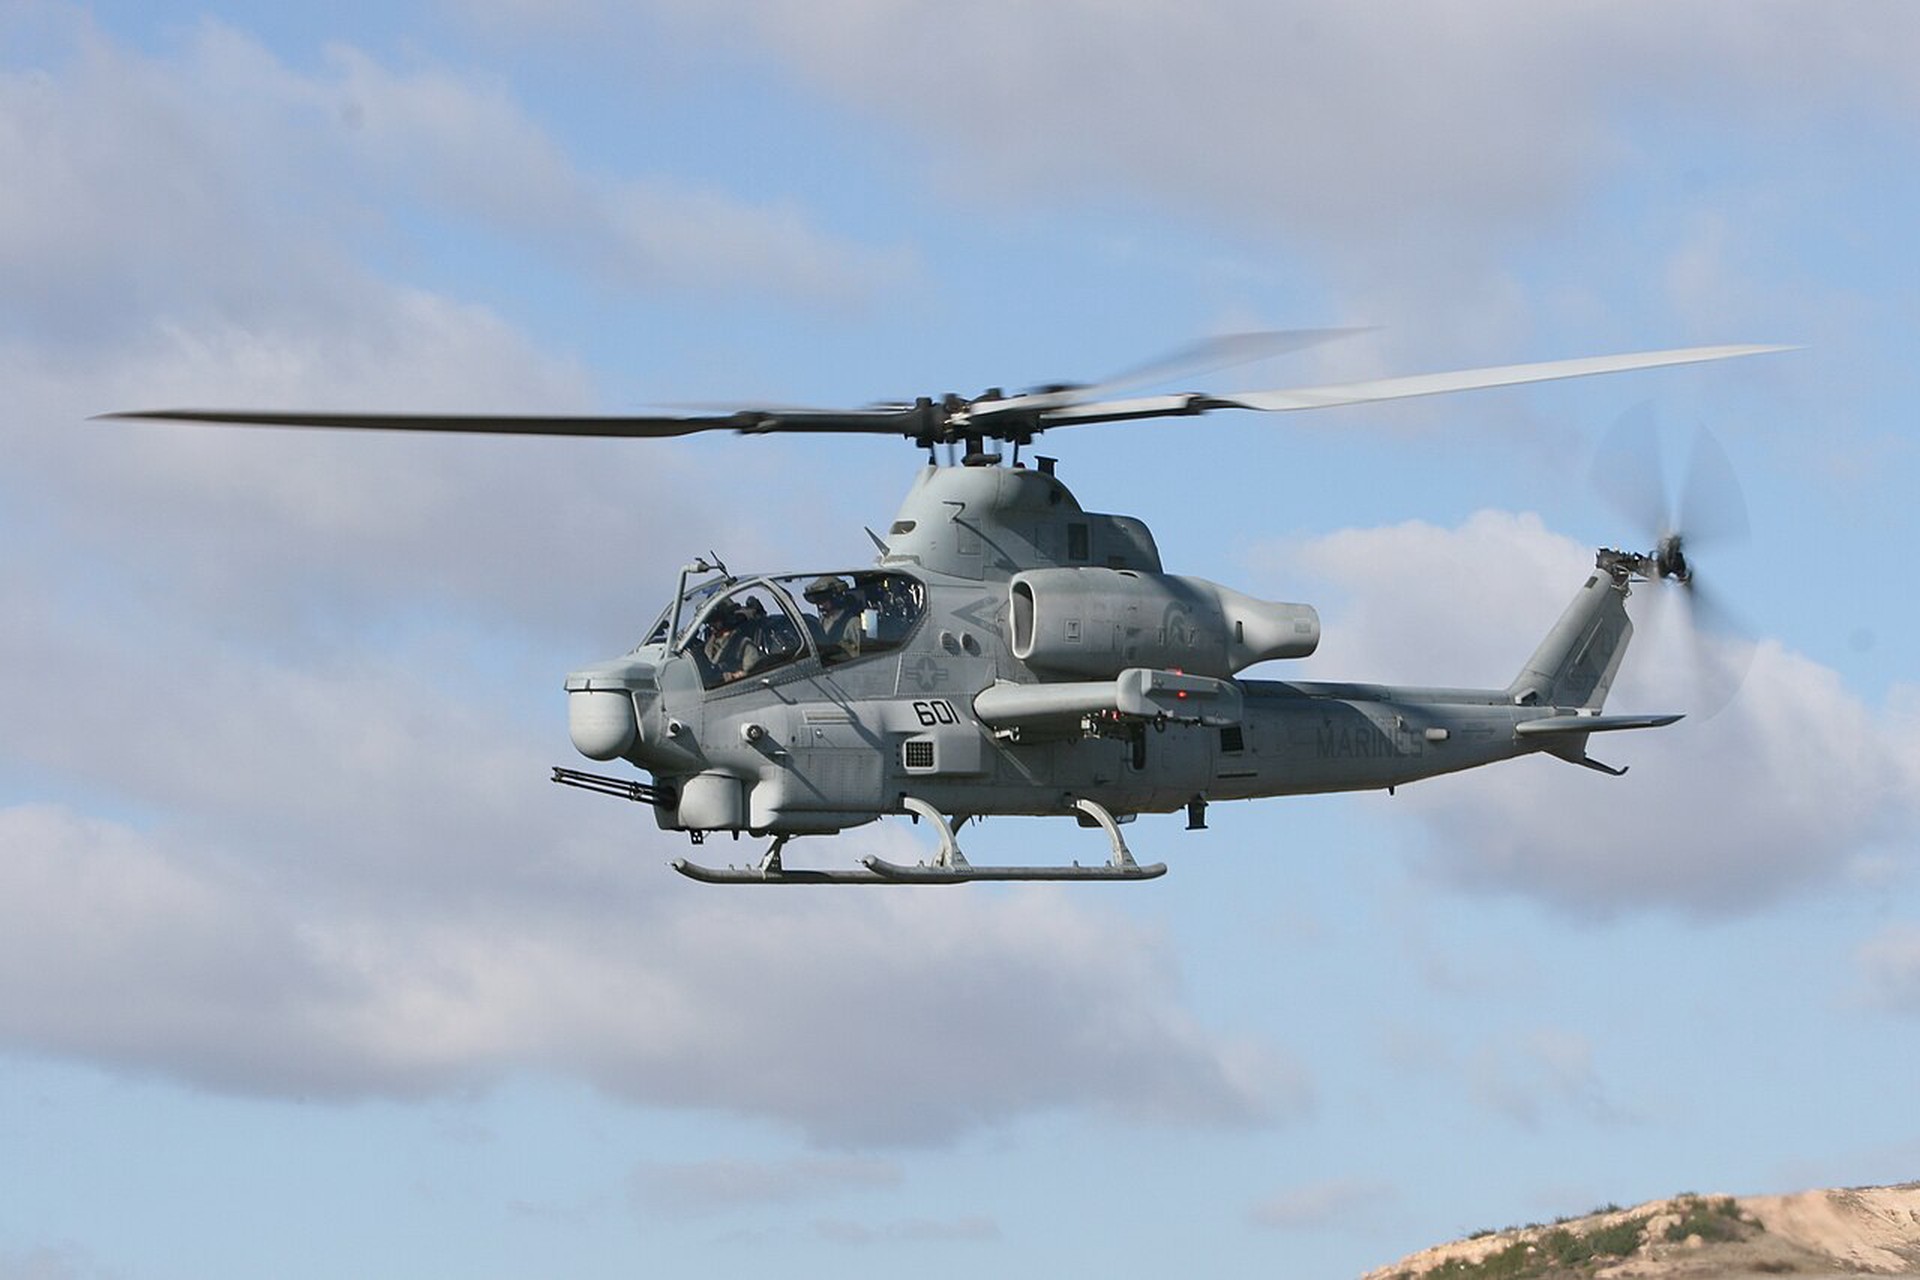 СМИ: Украина долго просила у США снятые с вооружения вертолеты АН-1Z Viper